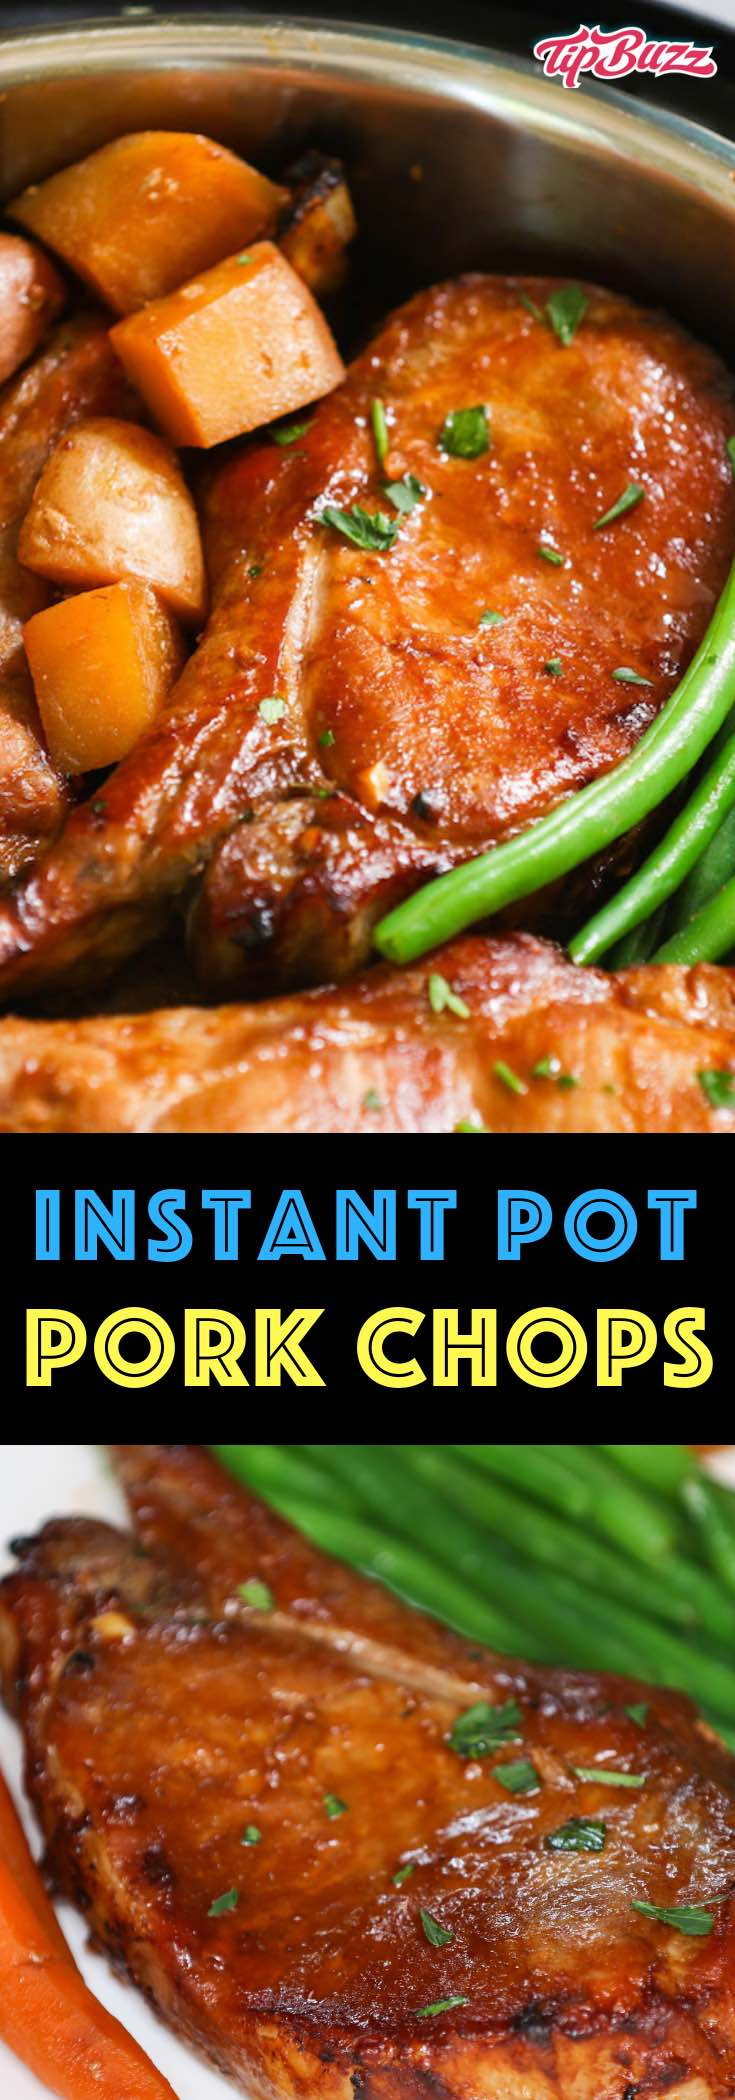 Instant Pot Lamb Chops Recipes
 Instant Pot Pork Chops TipBuzz